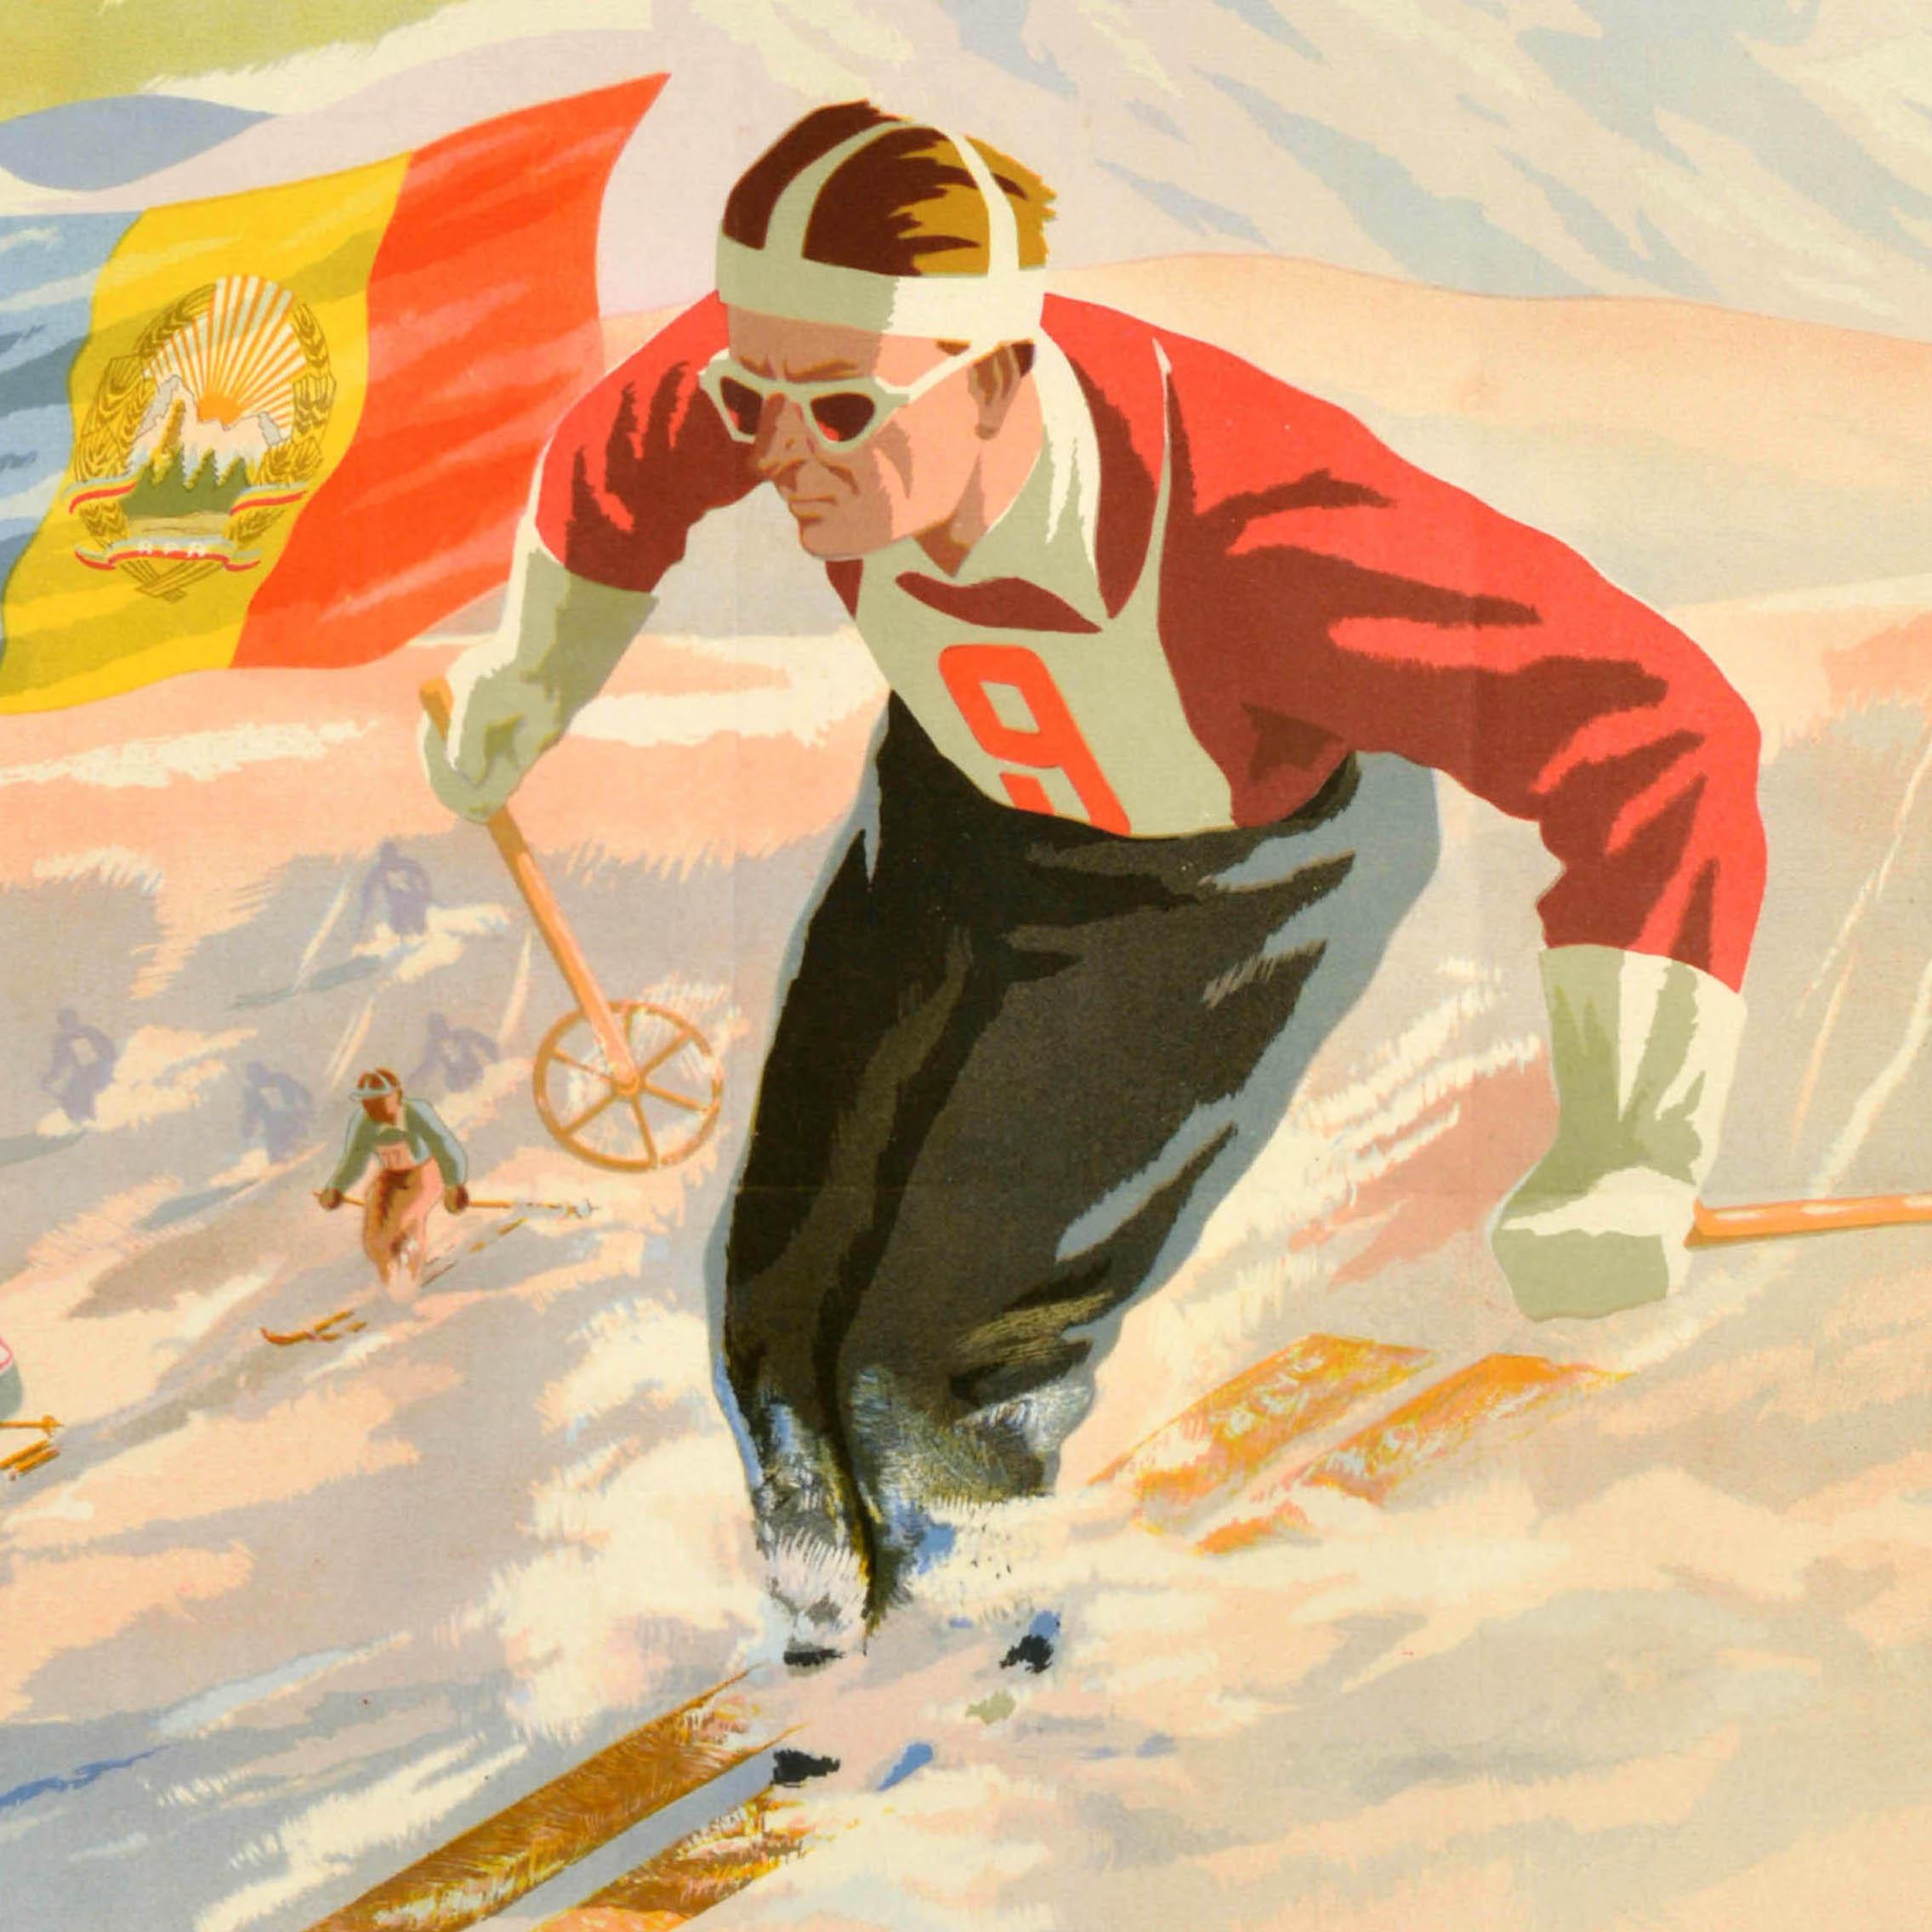 Affiche sportive originale d'époque pour les IXes Jeux Mondiaux Universitaires d'Hiver de l'Union Internationale des Etudiants qui se sont déroulés du 28 janvier au 4 février 1951 à Poiana en Roumanie. L'affiche présente une illustration dynamique